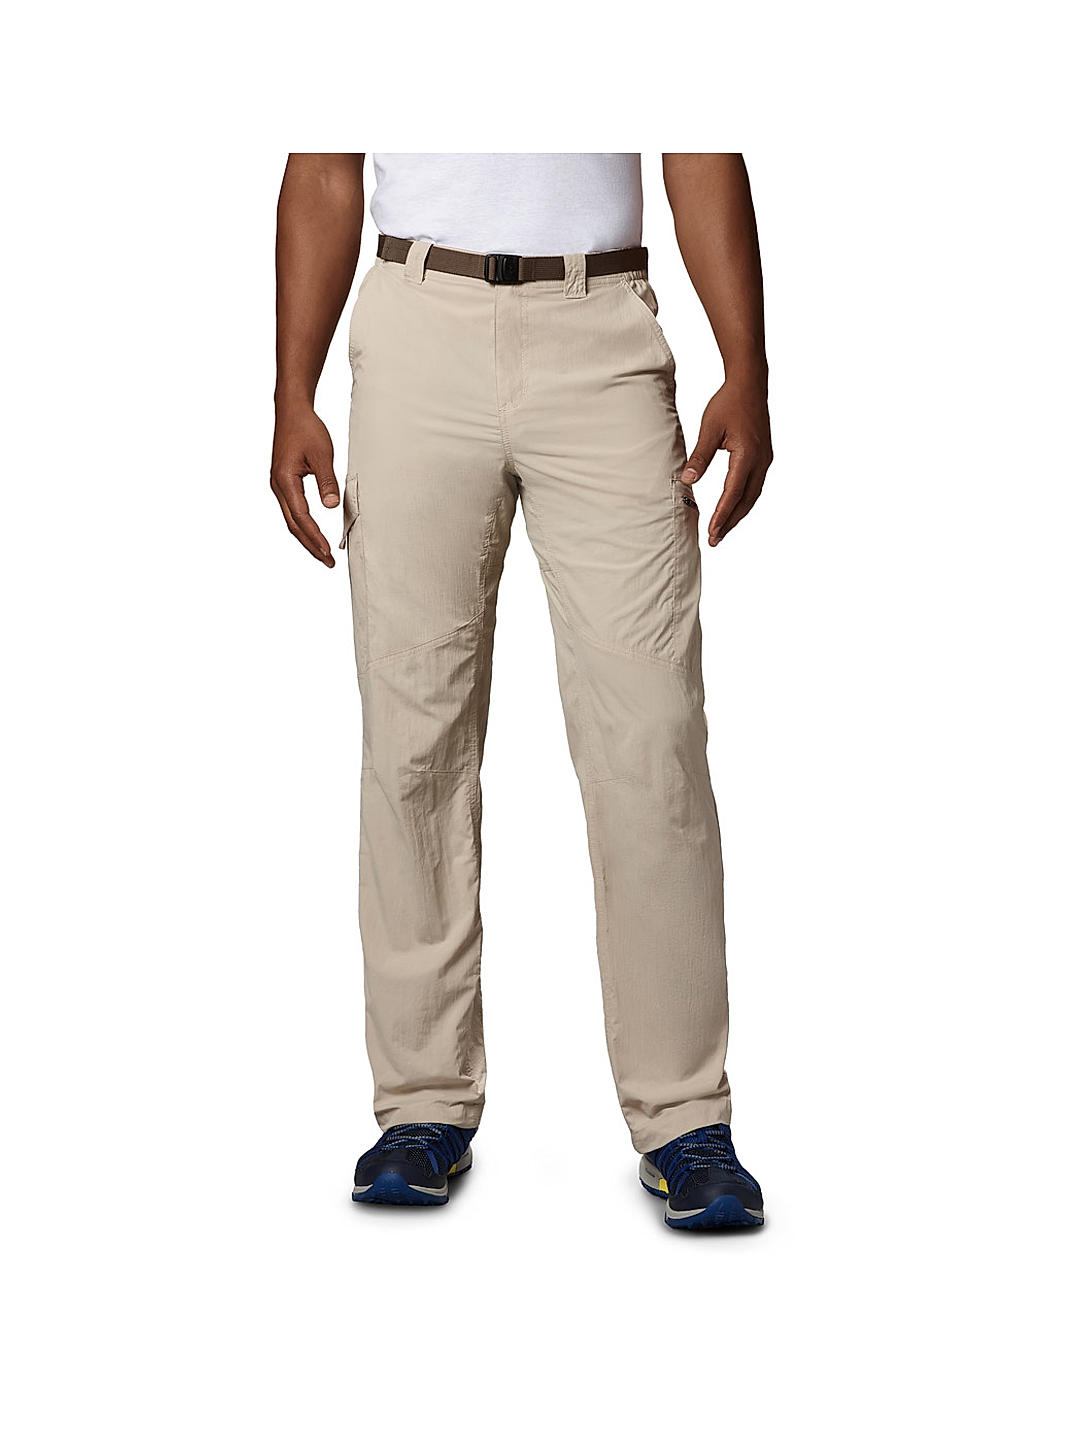 Buy Highlander White Cargo Jeans for Men Online at Rs769  Ketch